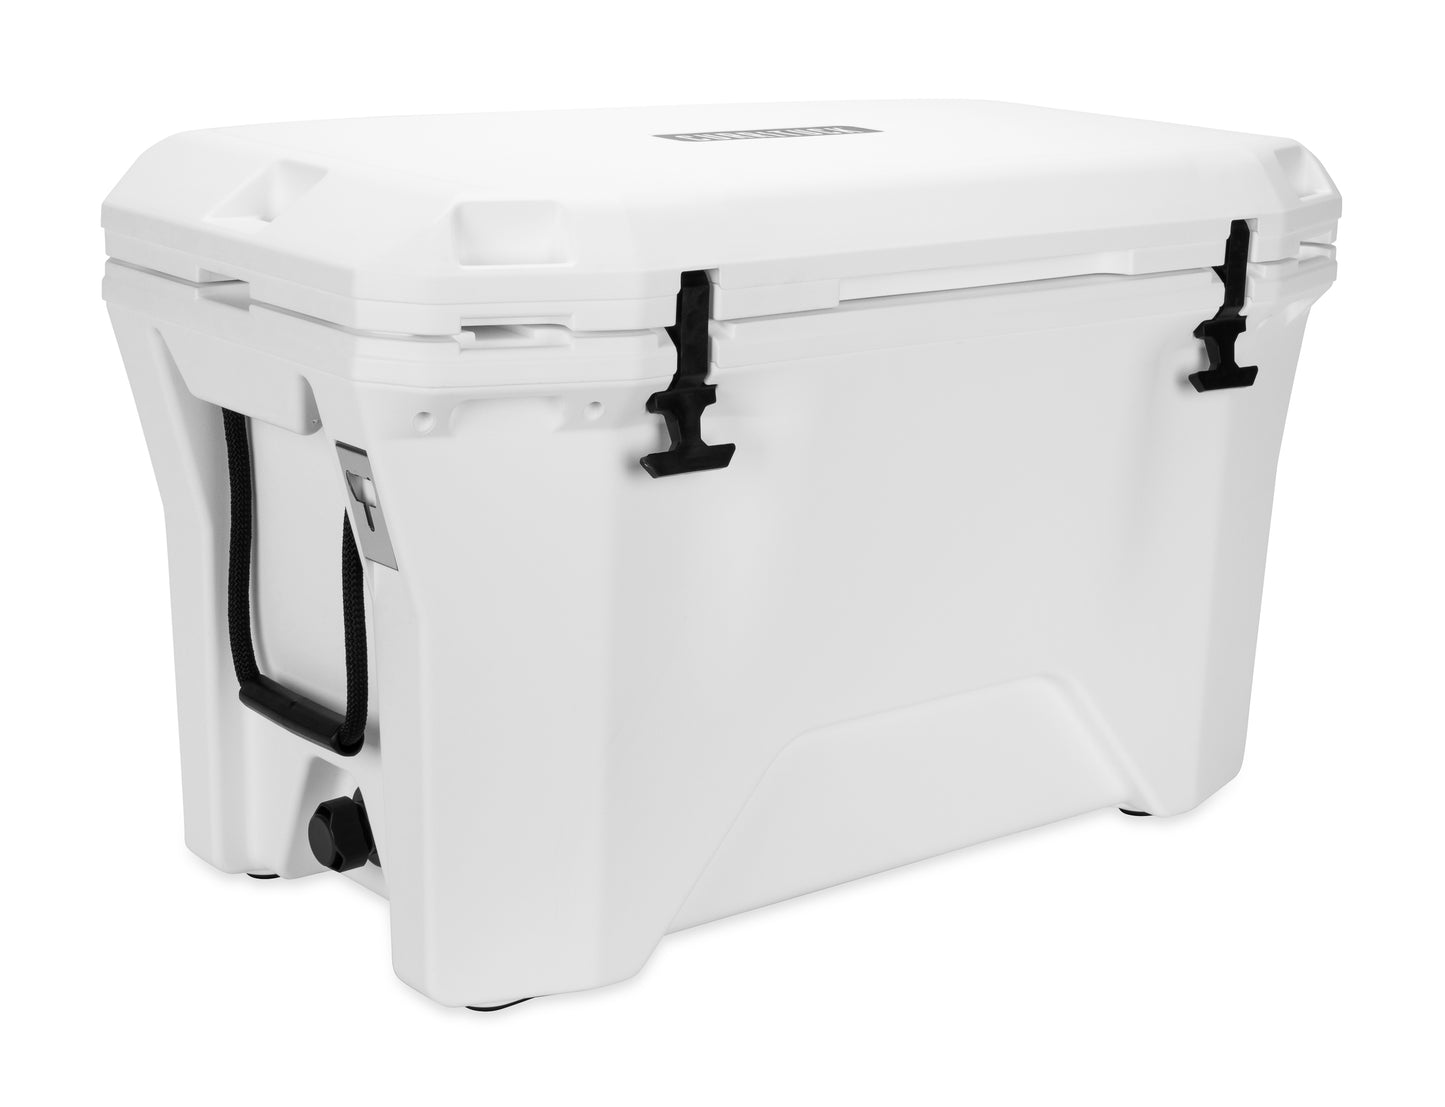 Currituck 30 and 50 Quart Premium Coolers - White